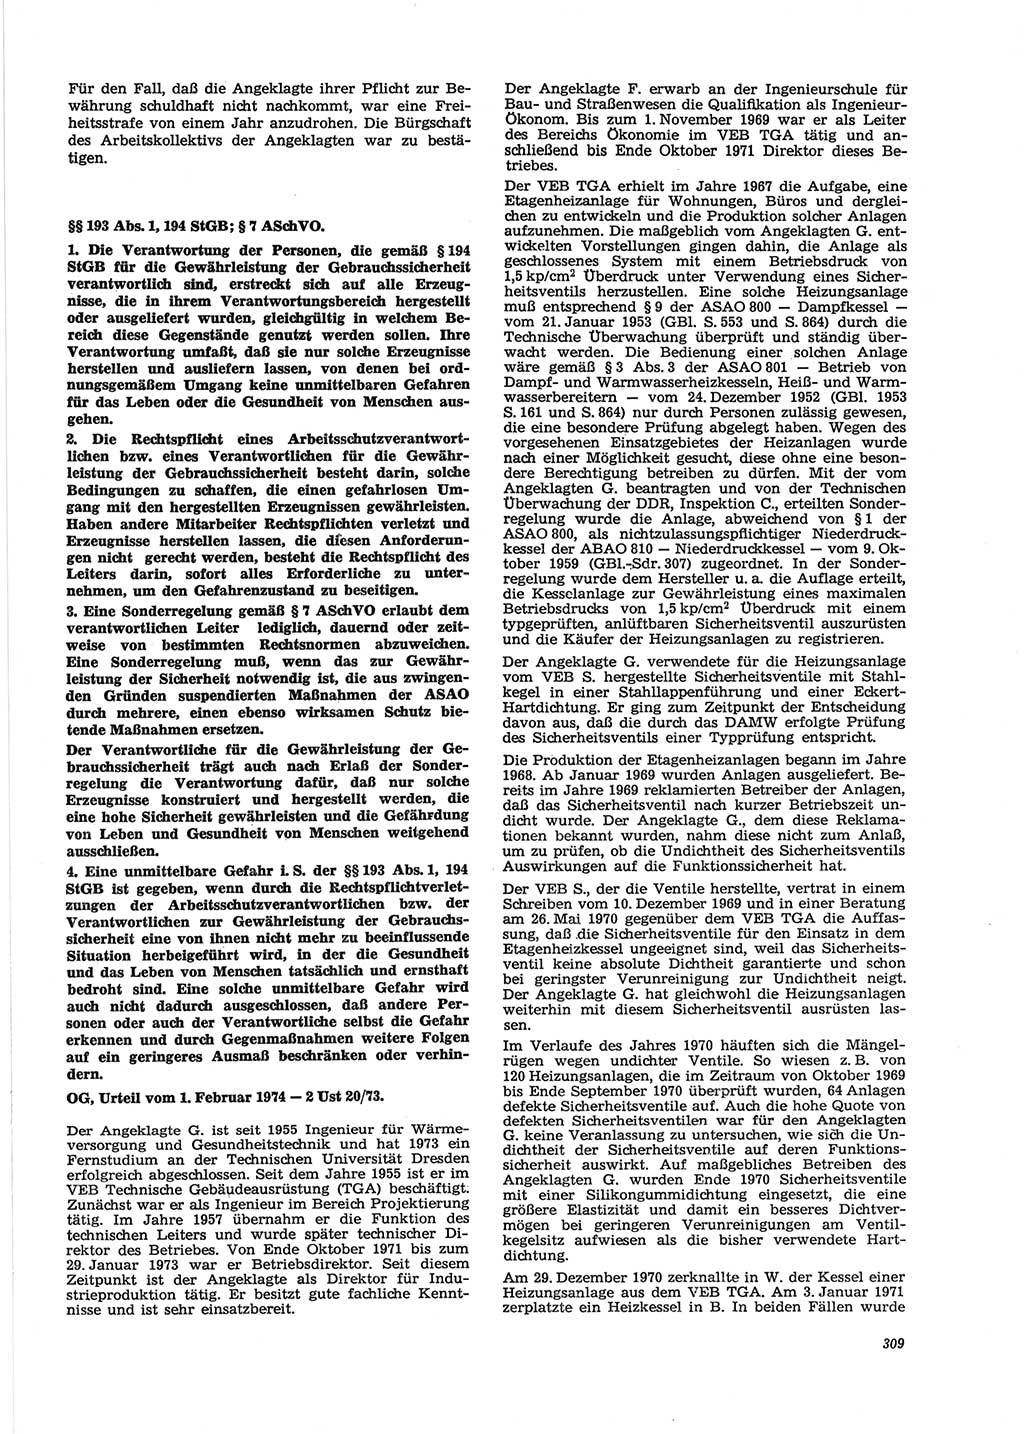 Neue Justiz (NJ), Zeitschrift für Recht und Rechtswissenschaft [Deutsche Demokratische Republik (DDR)], 28. Jahrgang 1974, Seite 309 (NJ DDR 1974, S. 309)